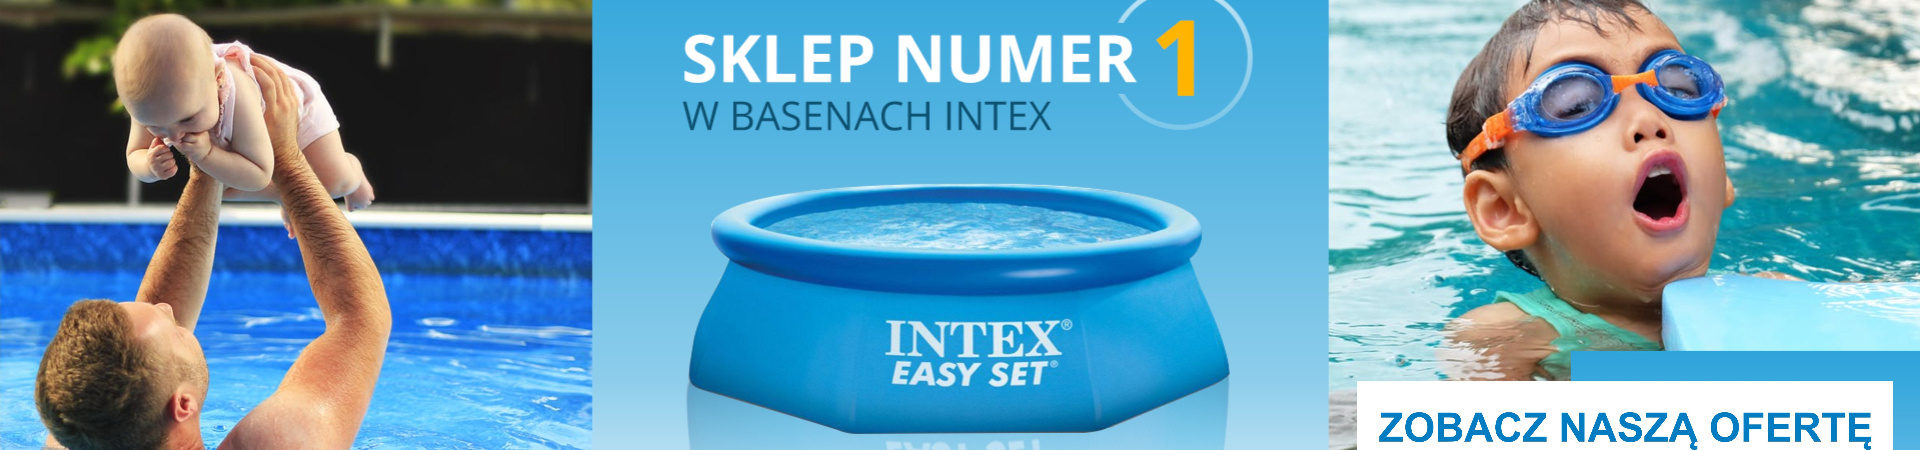 Sklep numer 1 w basenach INTEX